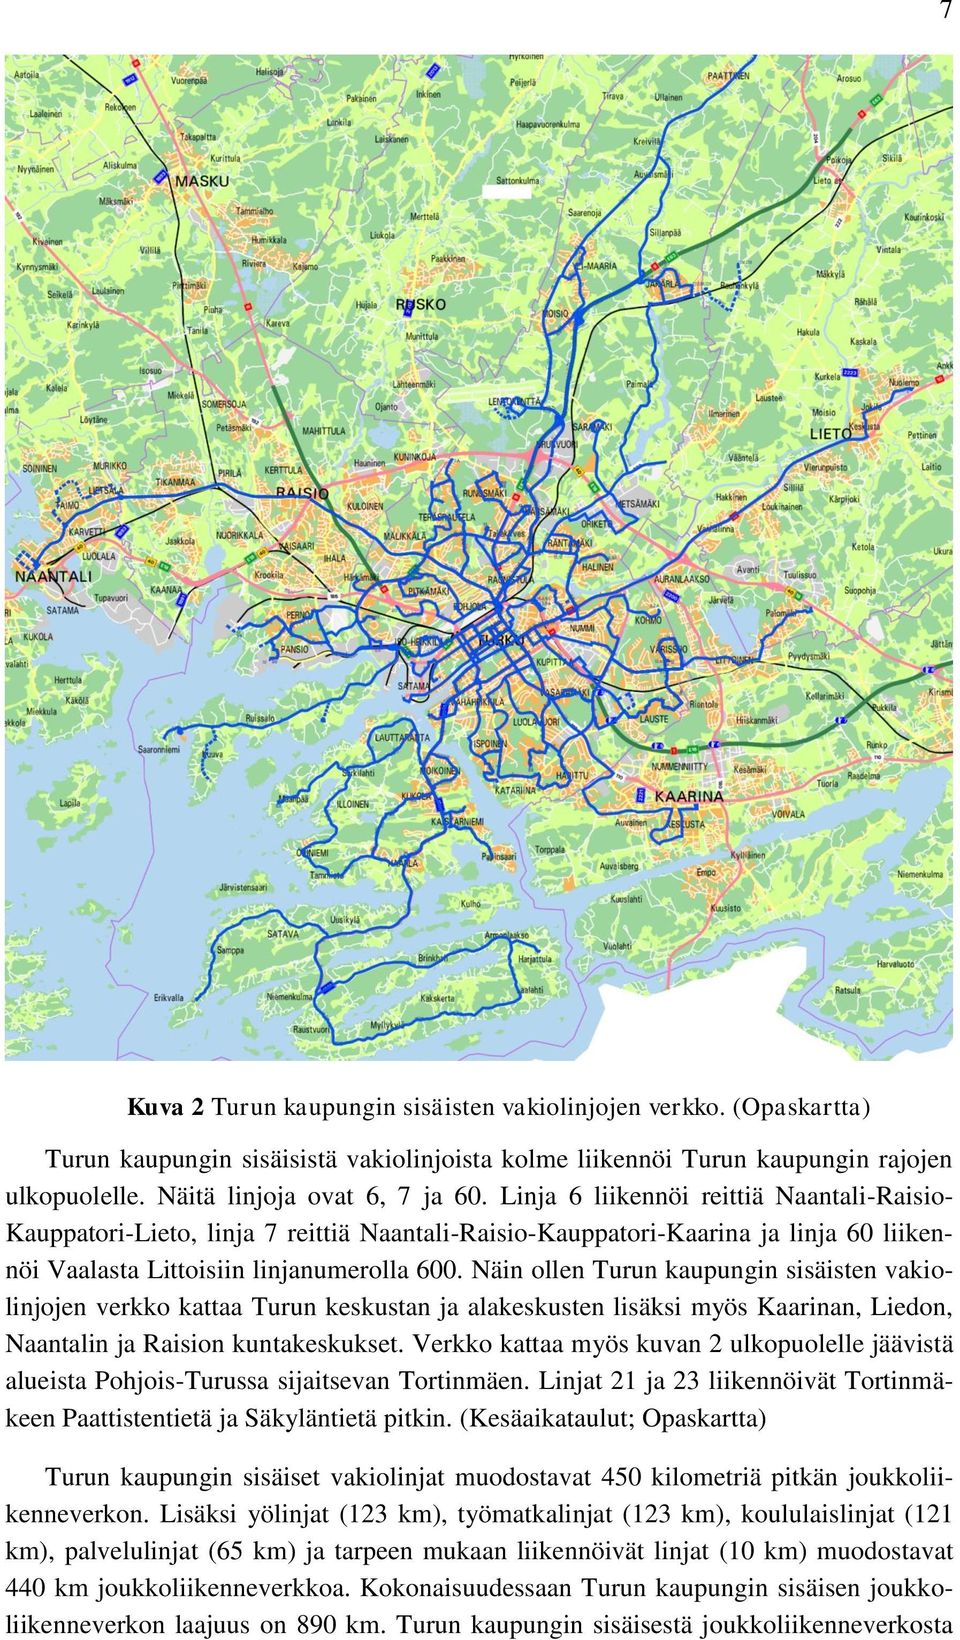 Näin ollen Turun kaupungin sisäisten vakiolinjojen verkko kattaa Turun keskustan ja alakeskusten lisäksi myös Kaarinan, Liedon, Naantalin ja Raision kuntakeskukset.